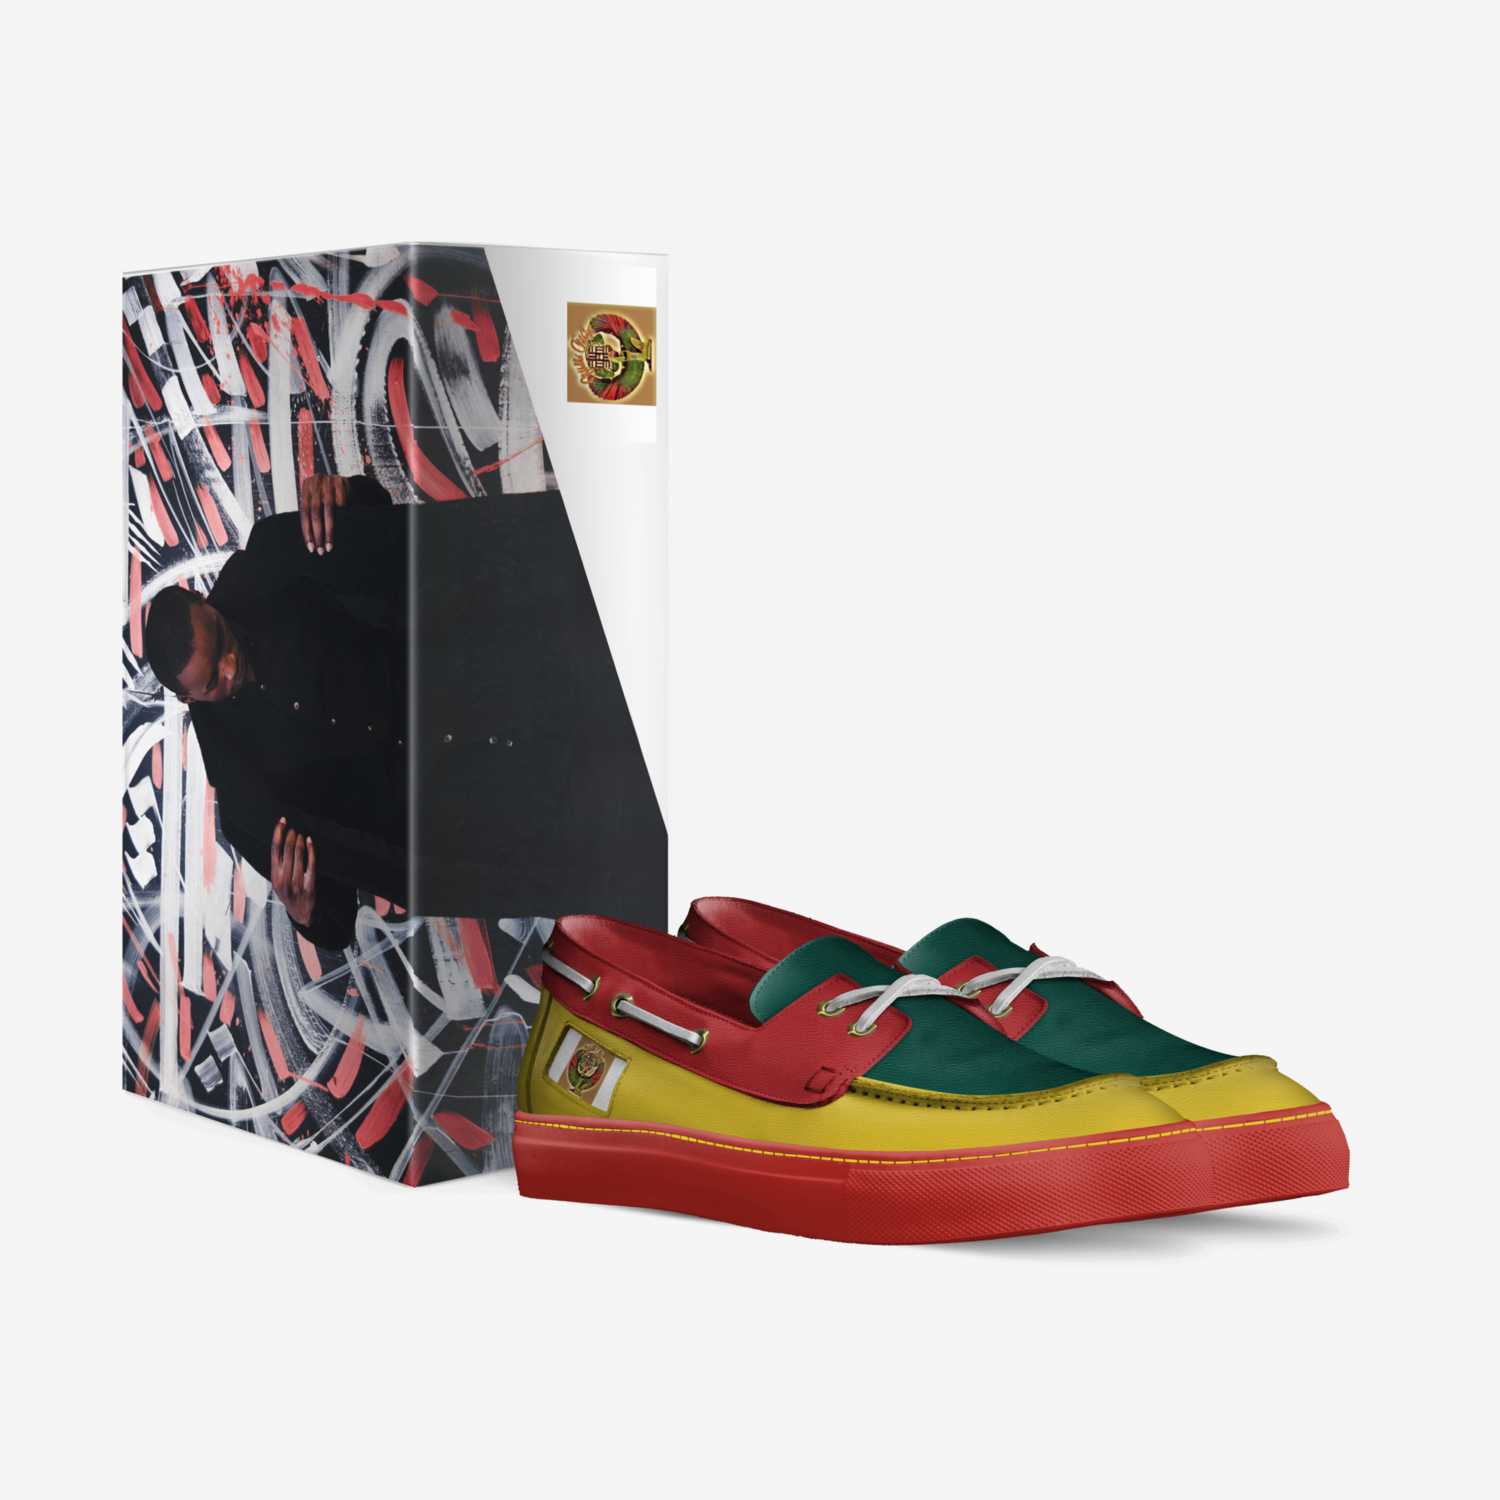 Melika Ma'Rifa custom made in Italy shoes by Tiffany Knighton | Box view